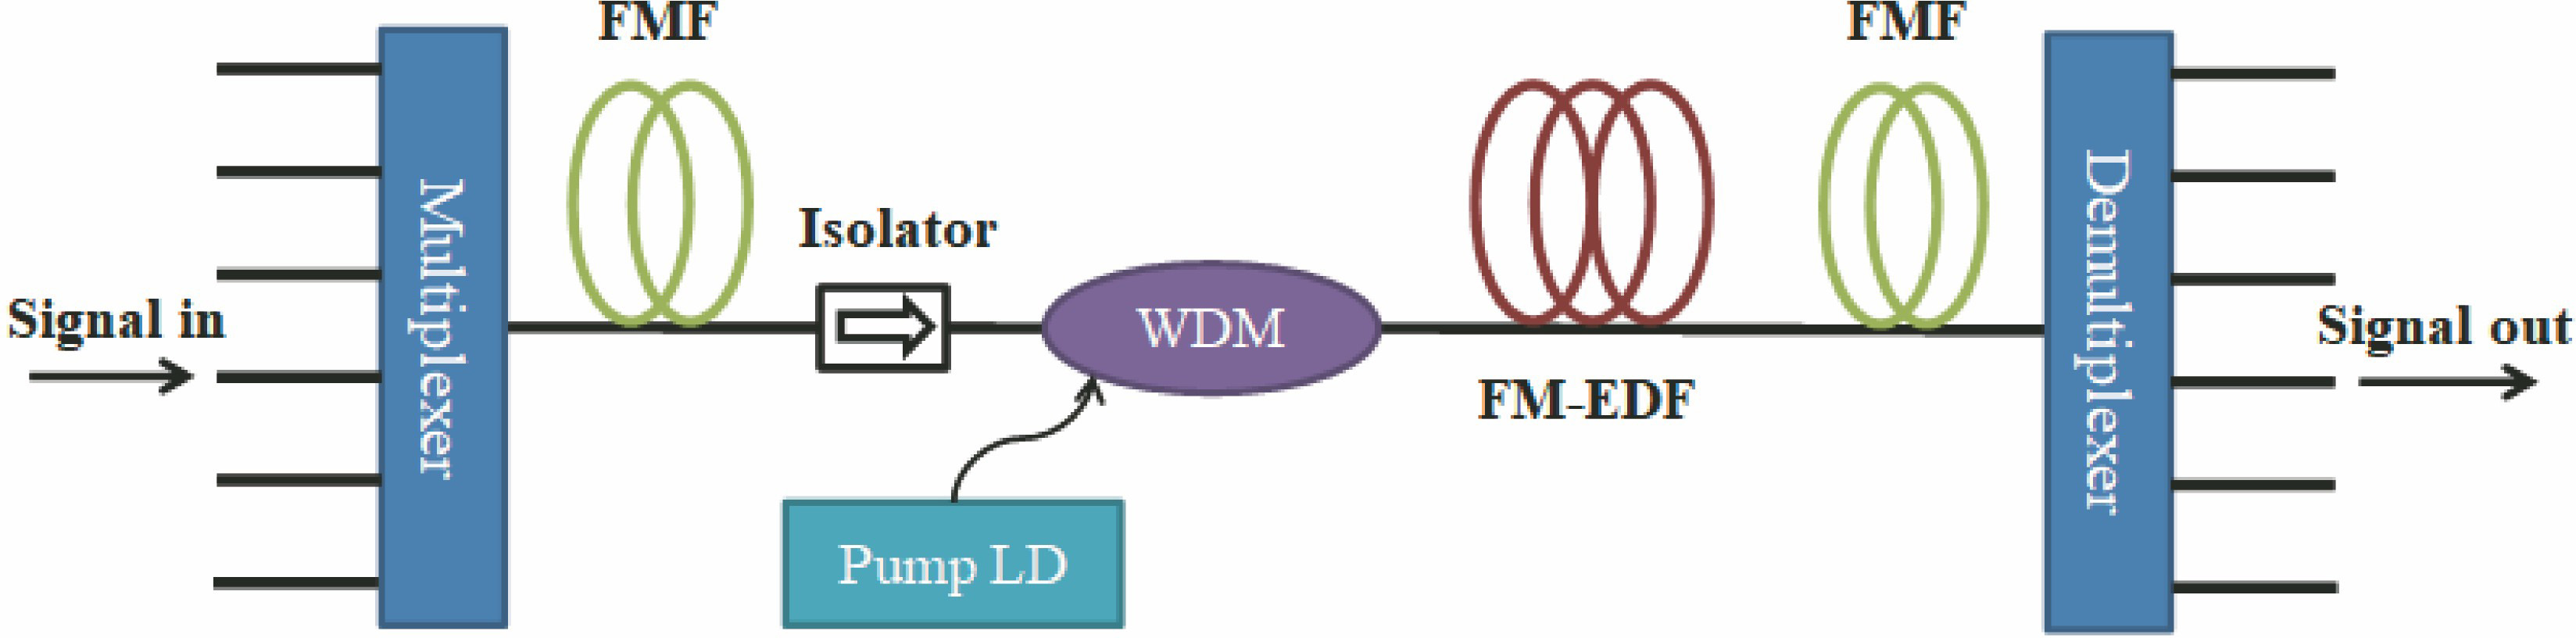 Schematic diagram of FM-EDFA